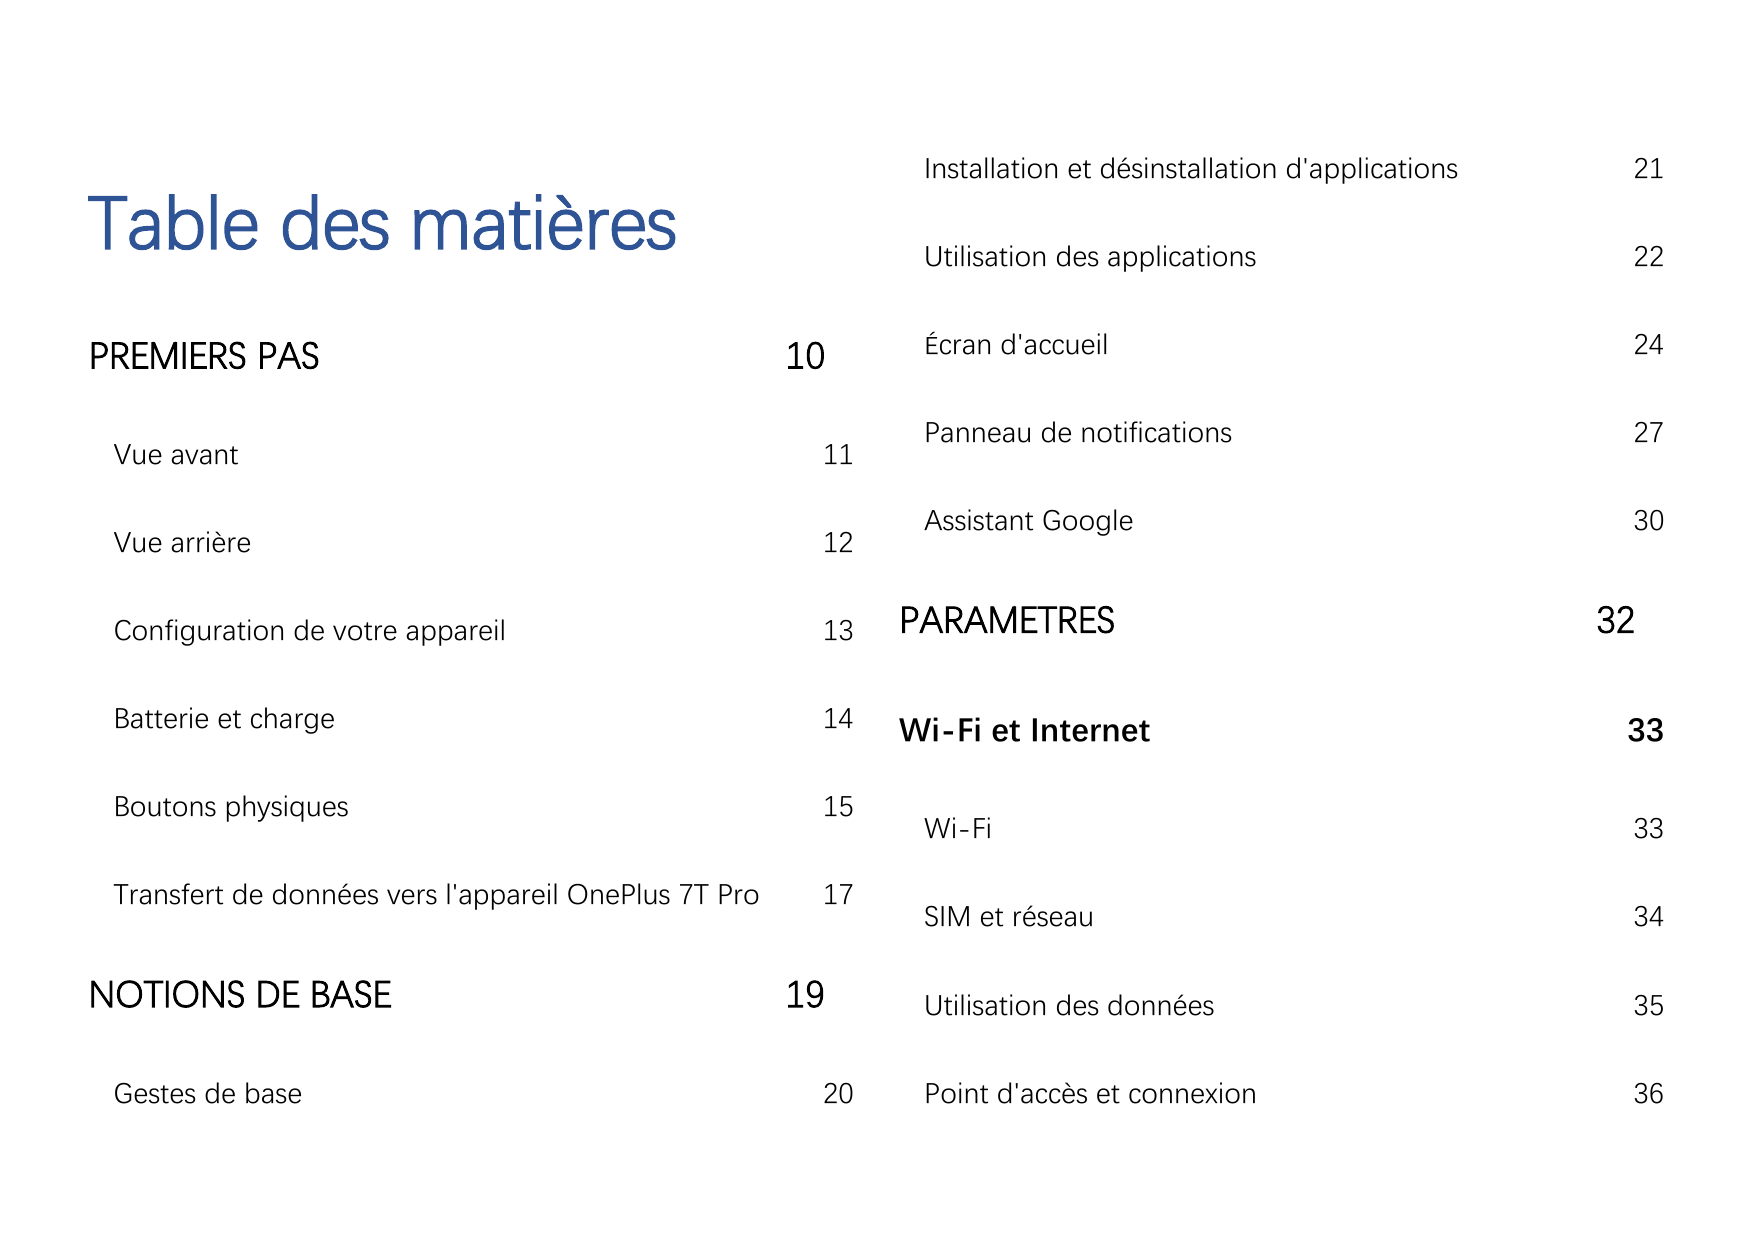 Table des matièresPREMIERS PAS10Installation et désinstallation d'applications21Utilisation des applications22Écran d'accueil24P